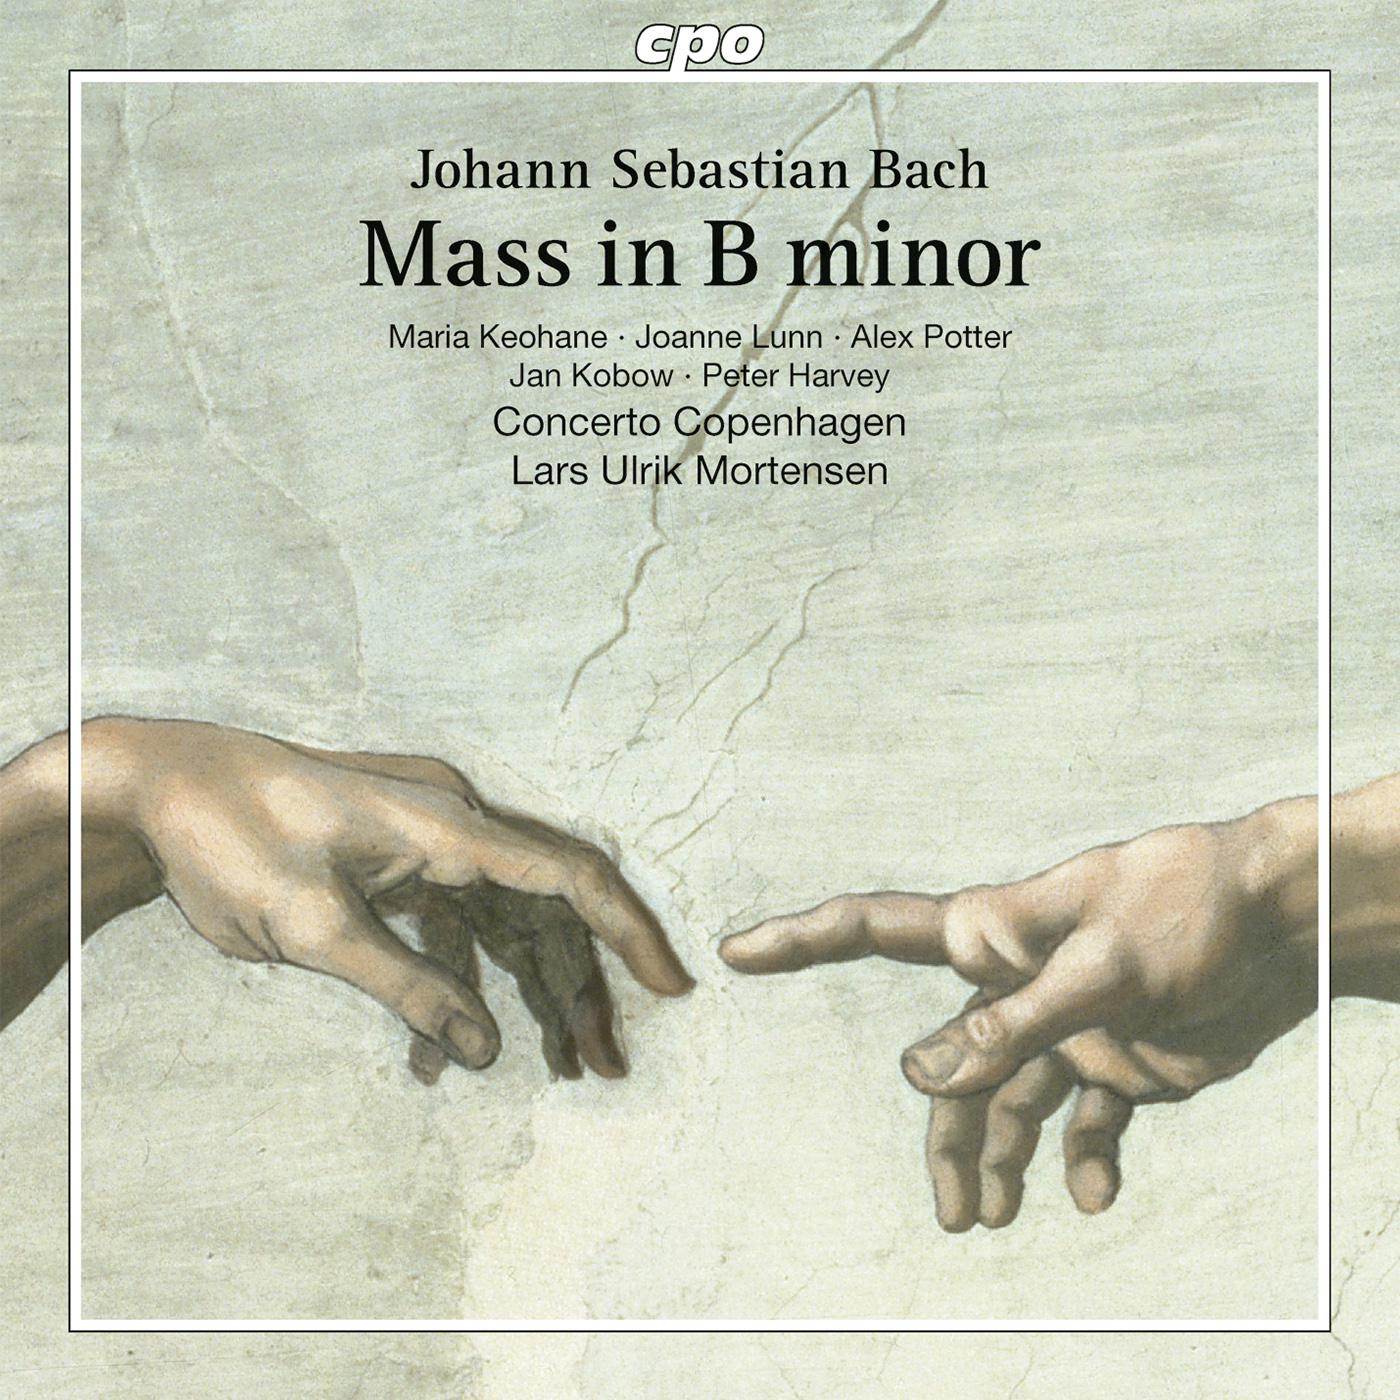 Concerto Copenhagen - Mass in B Minor, BWV 232:Sanctus (Chorus)